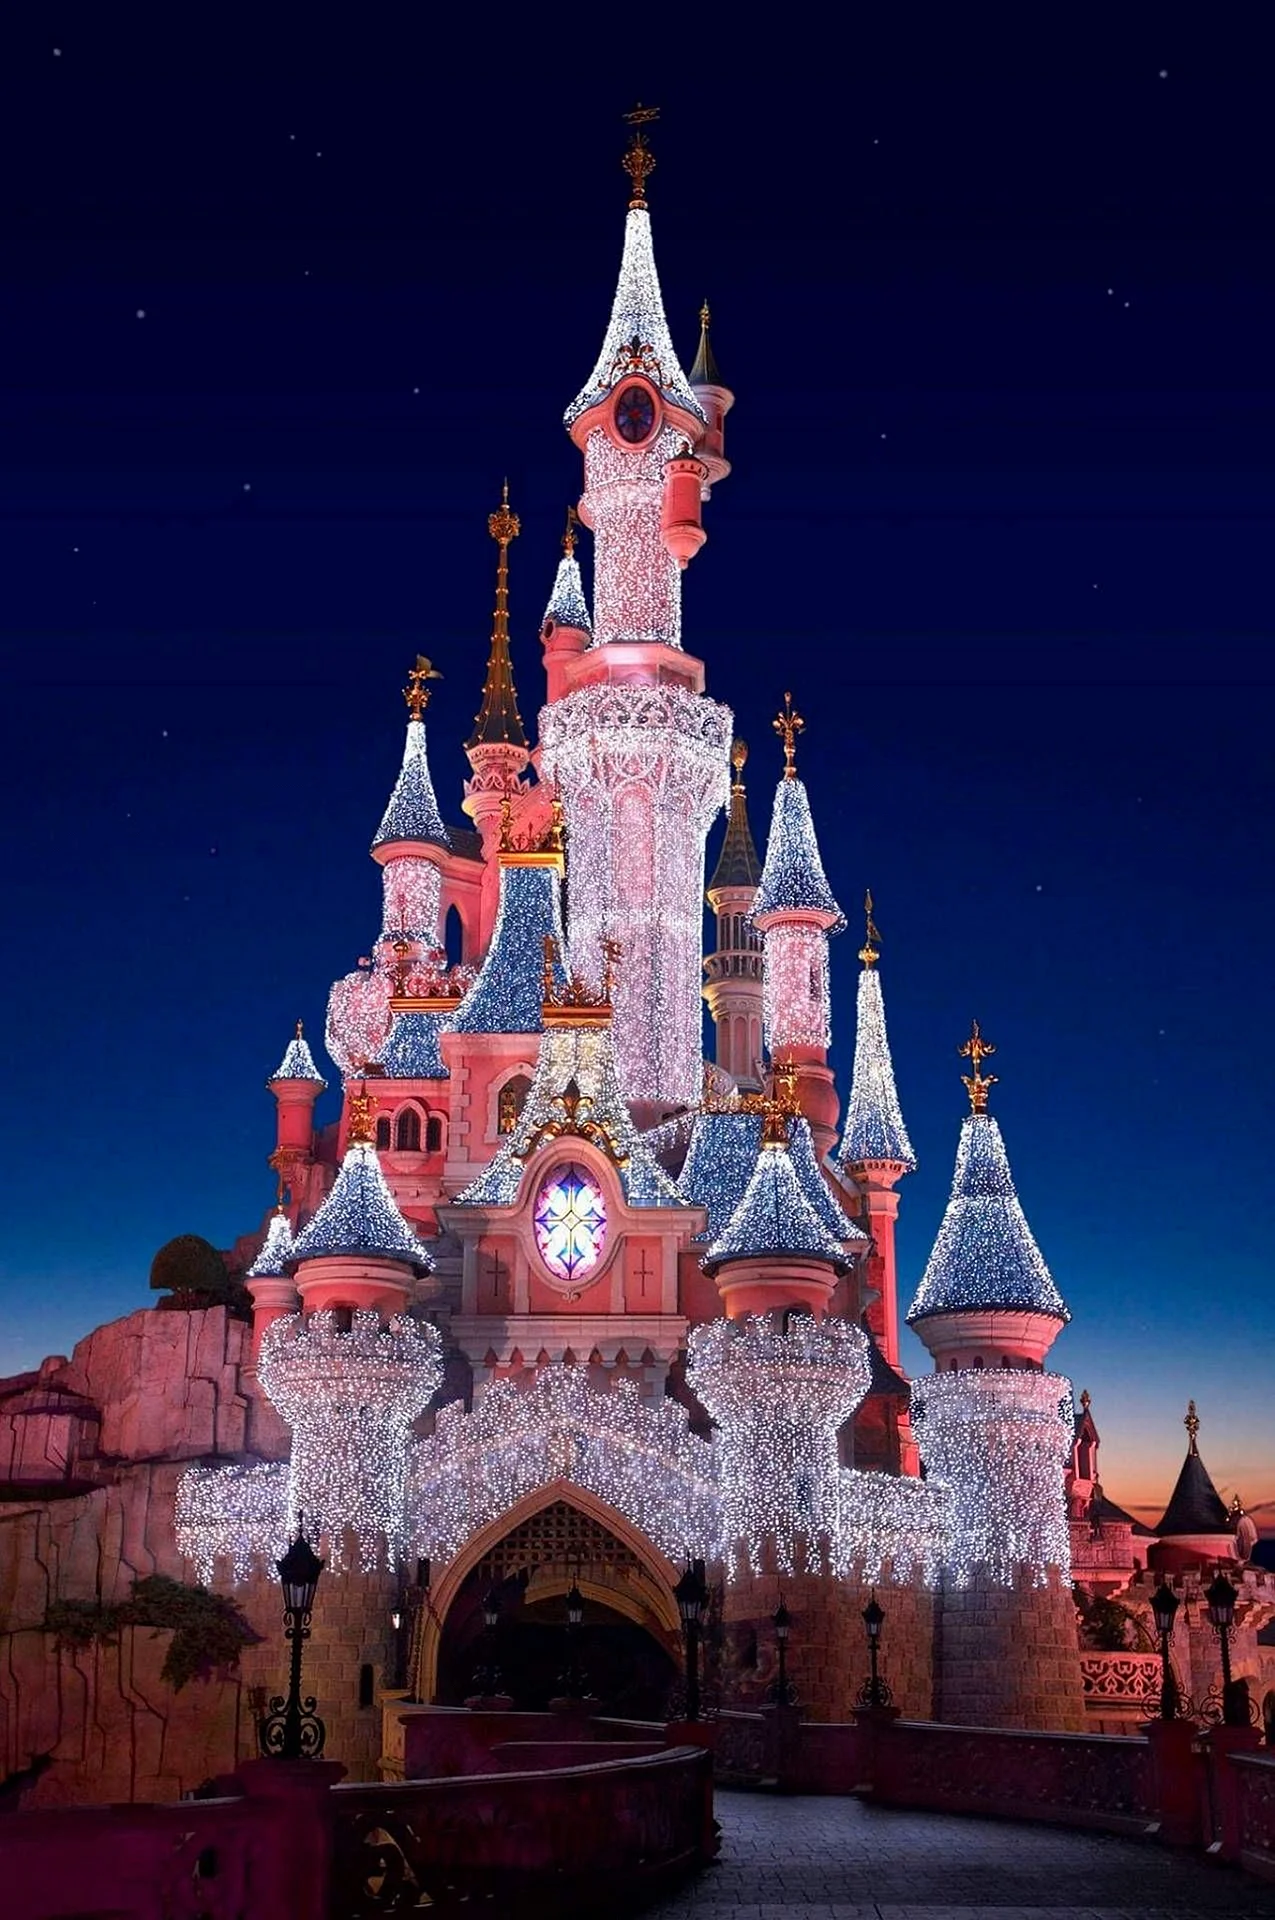 Disneyland Paris Wallpaper For iPhone